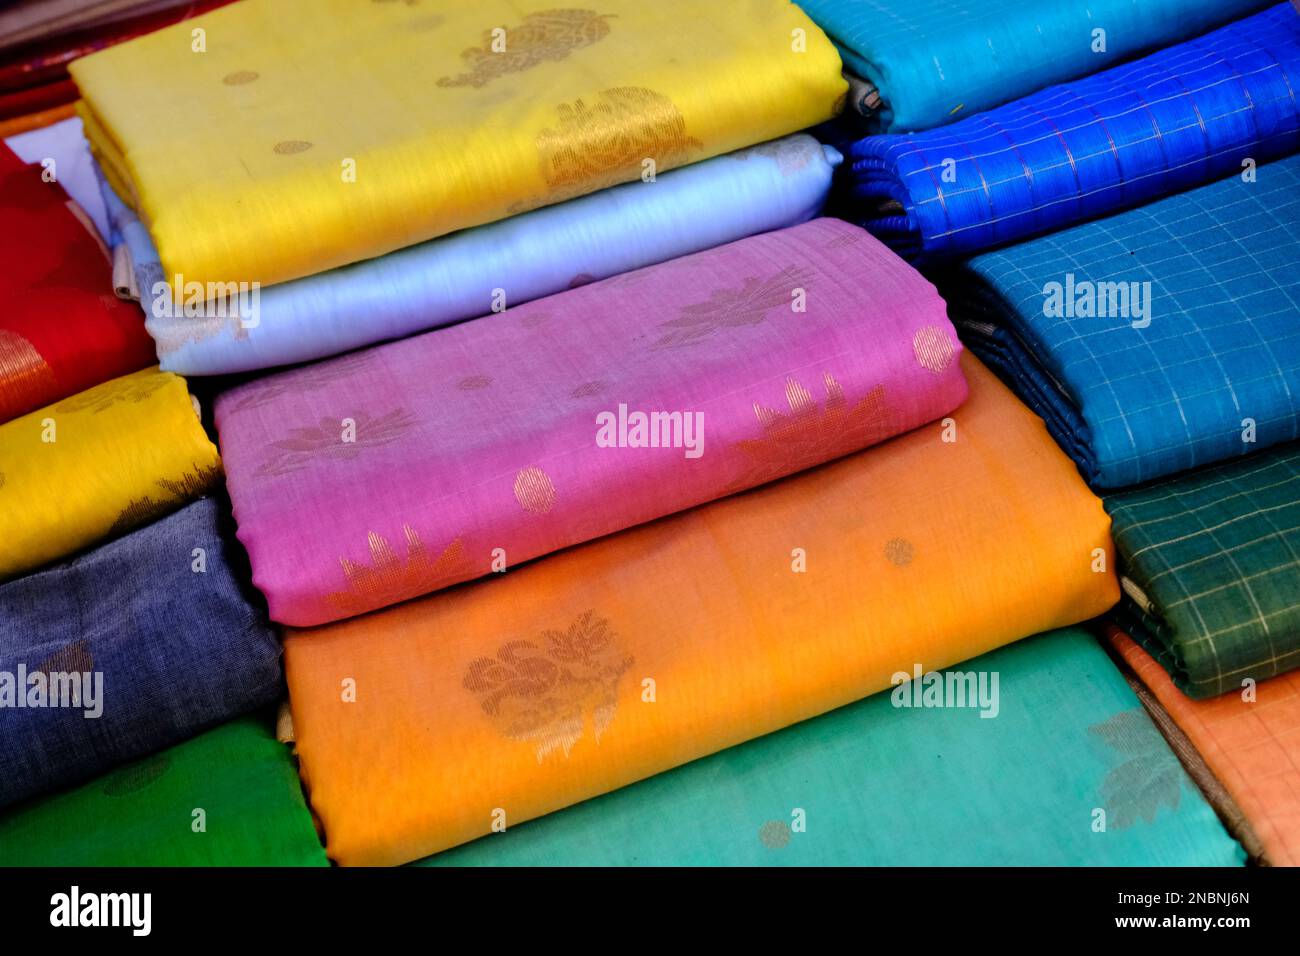 Visualizzazione di vividi e colorati Sari indiani, tessuti indiani, fuoco selettivo. Foto Stock